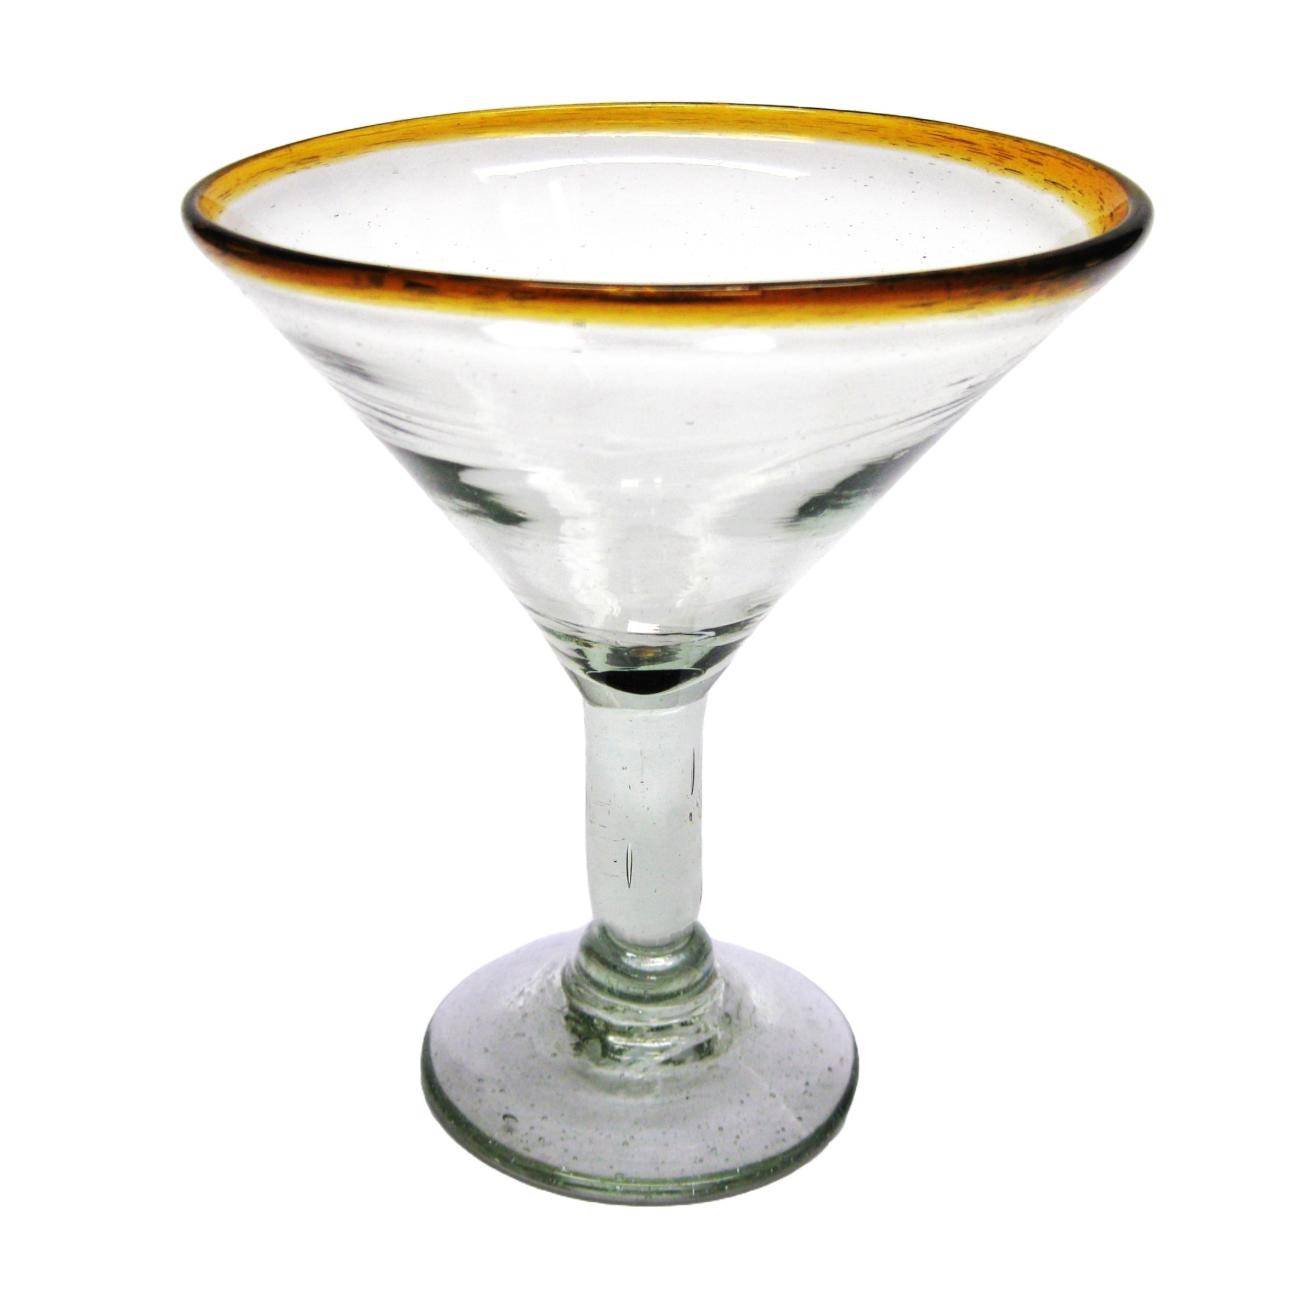 VIDRIO SOPLADO / Juego de 6 copas para martini con borde color mbar / ste hermoso juego de copas para martini le dar un toque clsico mexicano a sus fiestas.